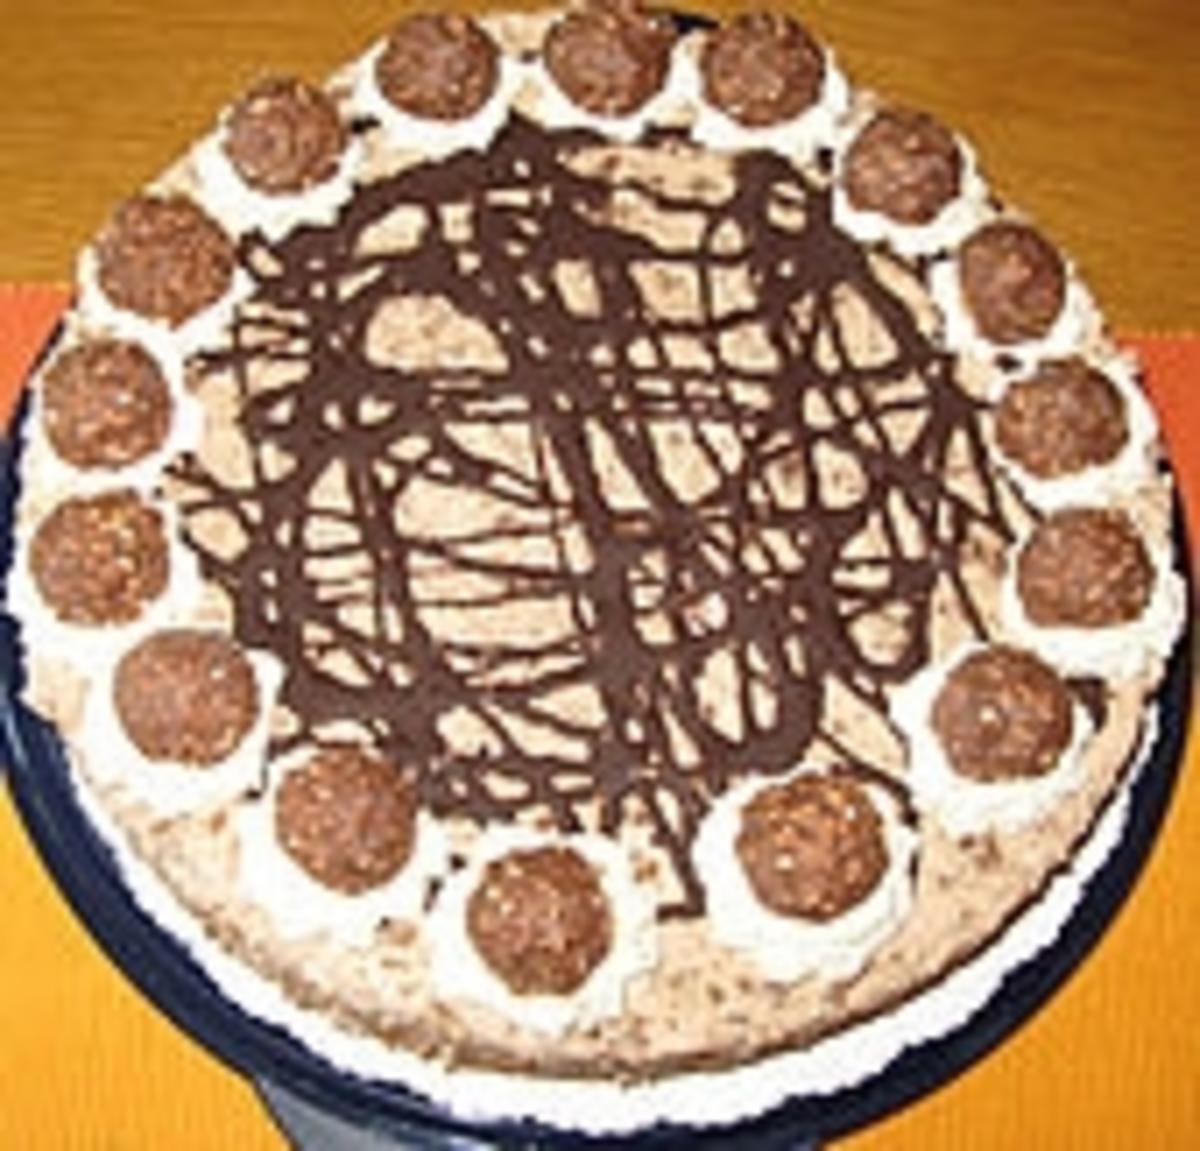 Feine Rocher - Torte - Rezept mit Bild - kochbar.de